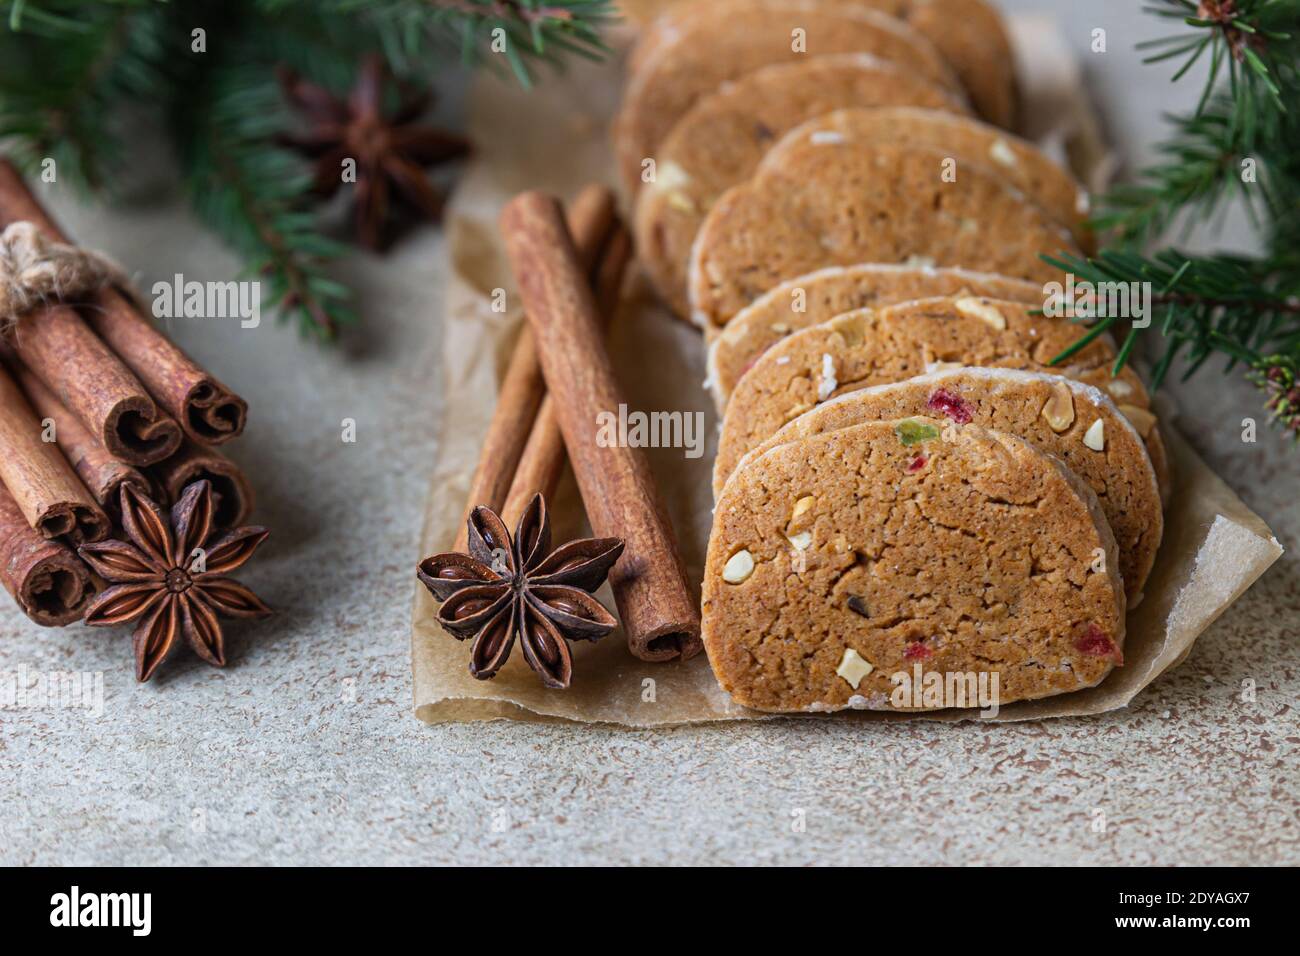 Biscuits au beurre danois épicés avec fruits confits, bâtonnets de cannelle et anis, fond clair. Fond de Noël ou de nouvel an avec branche de sapin Banque D'Images